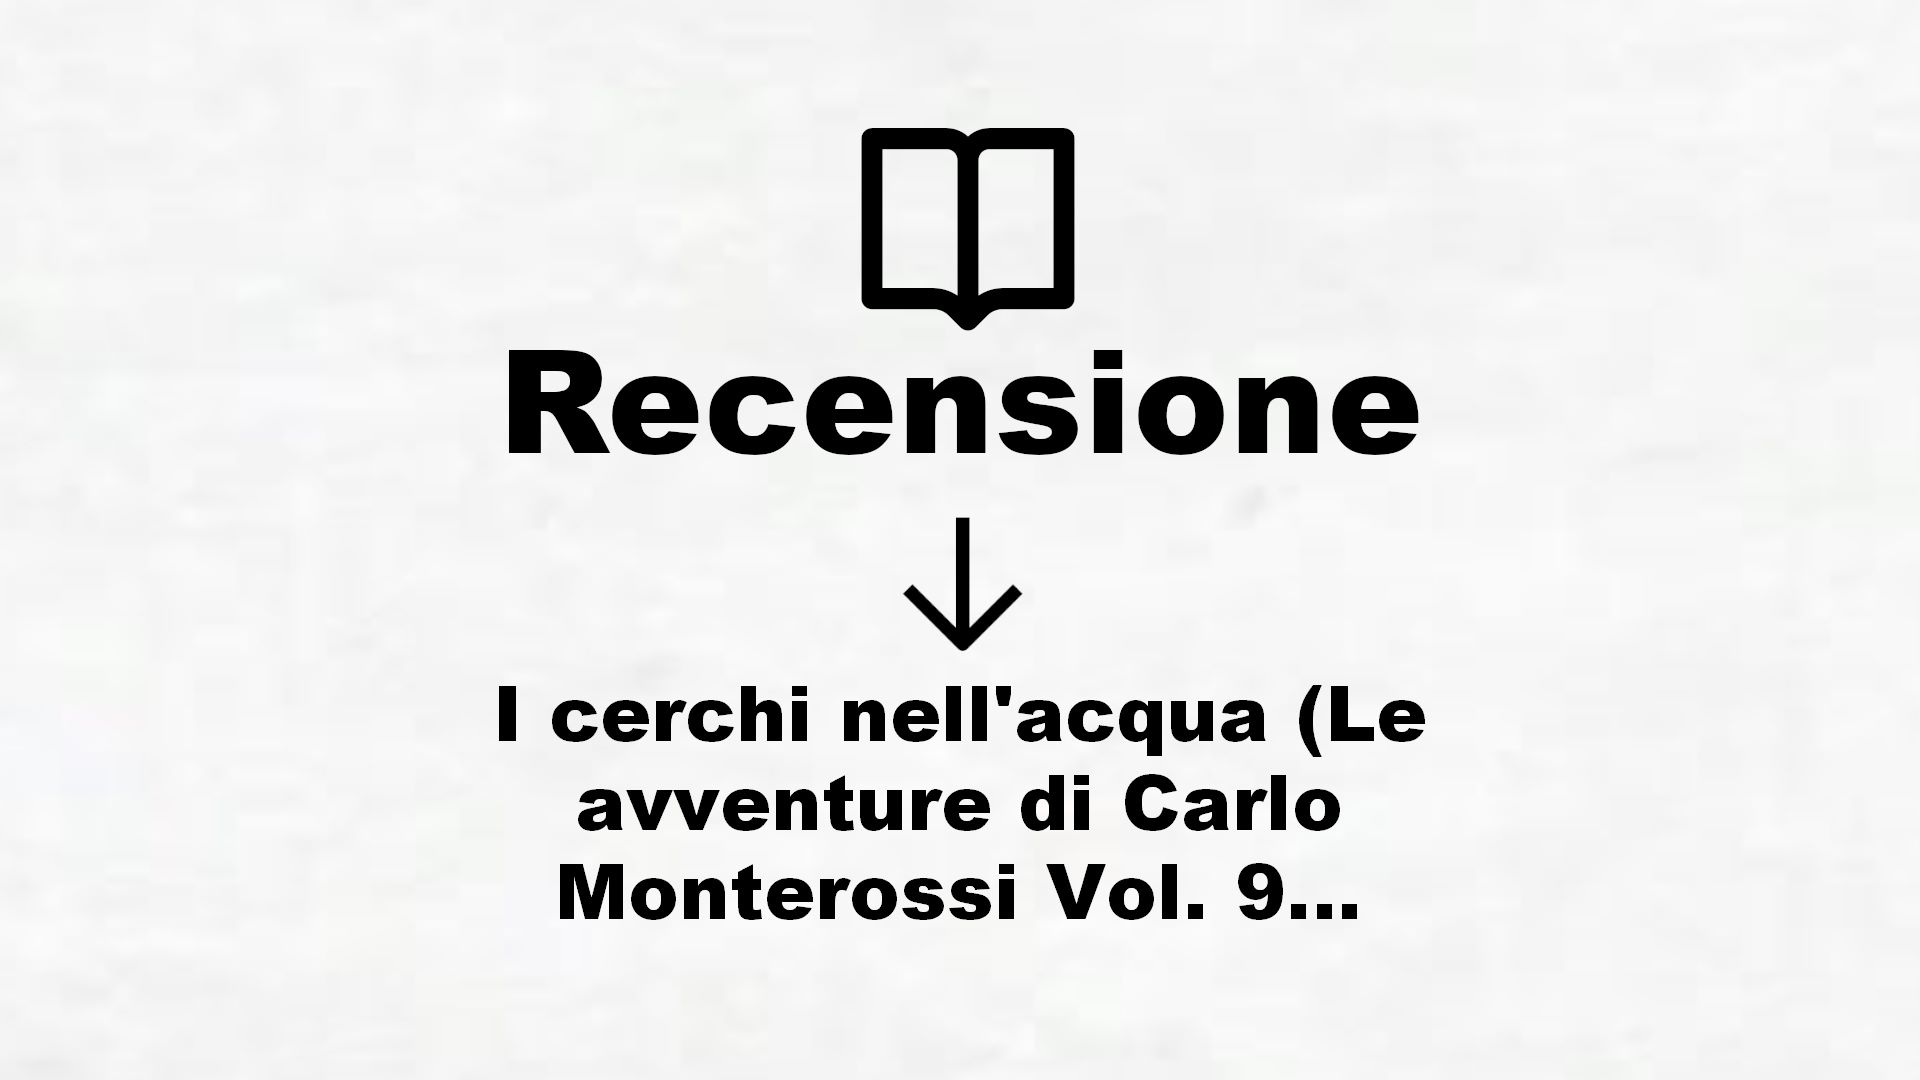 I cerchi nell’acqua (Le avventure di Carlo Monterossi Vol. 9) – Recensione Libro